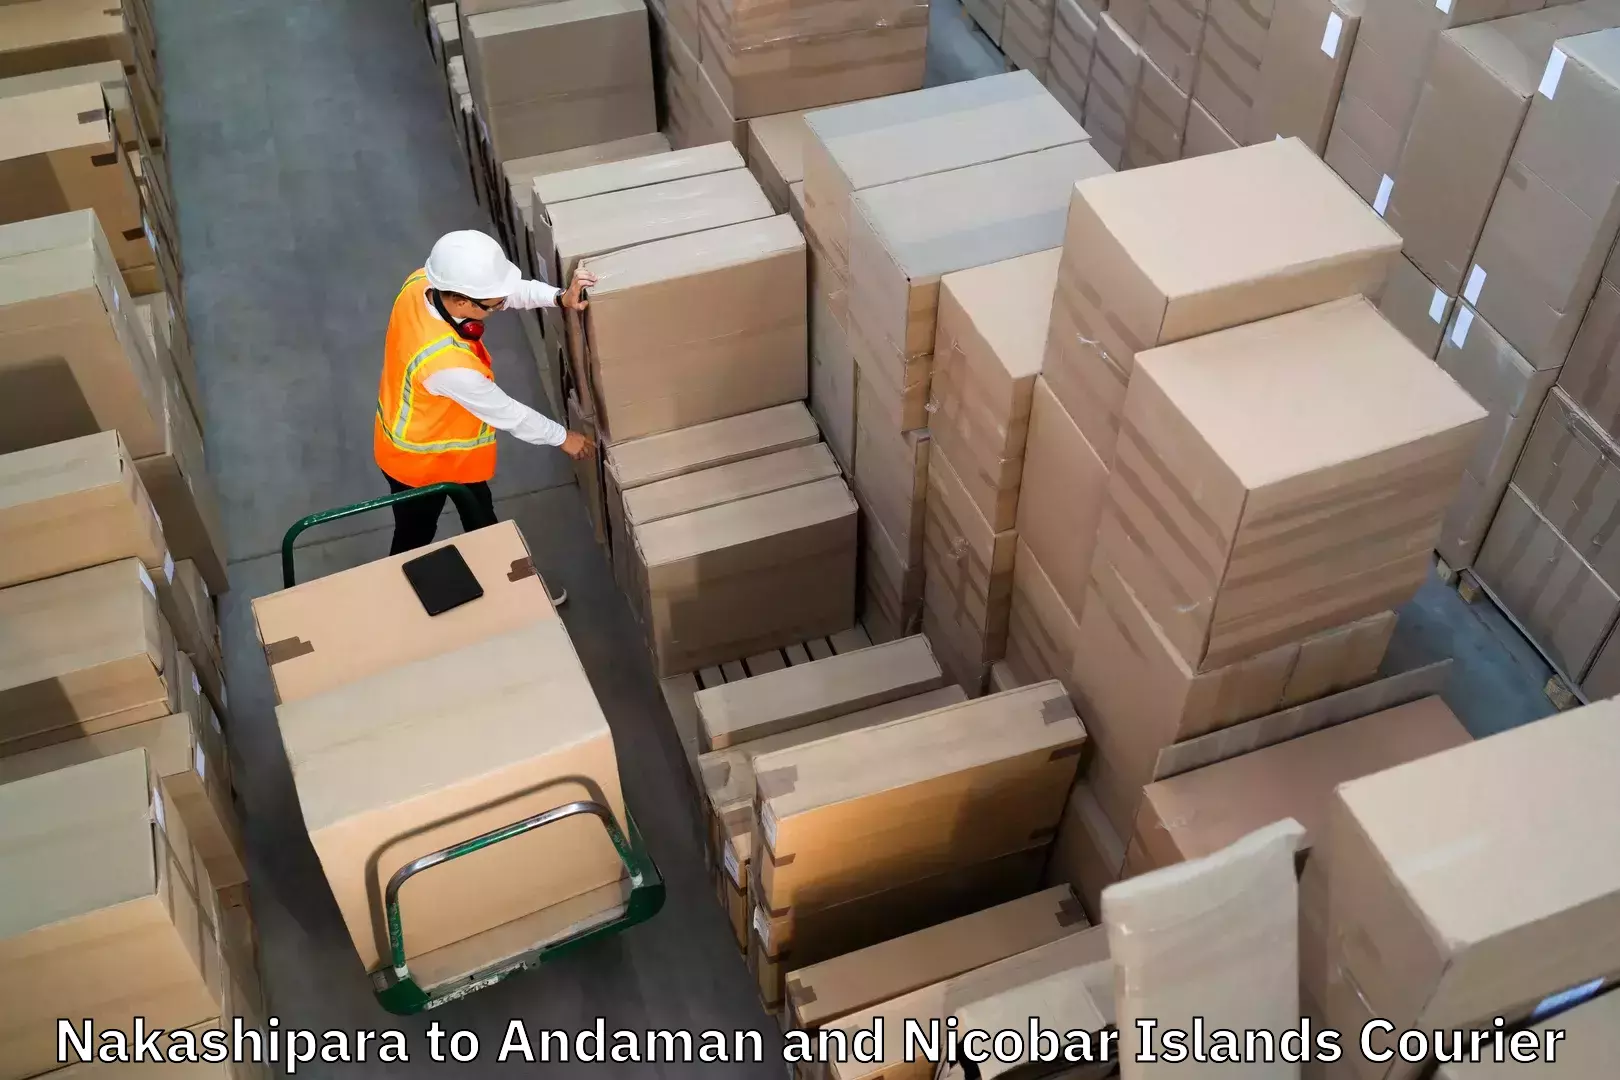 Baggage shipping experts Nakashipara to North And Middle Andaman